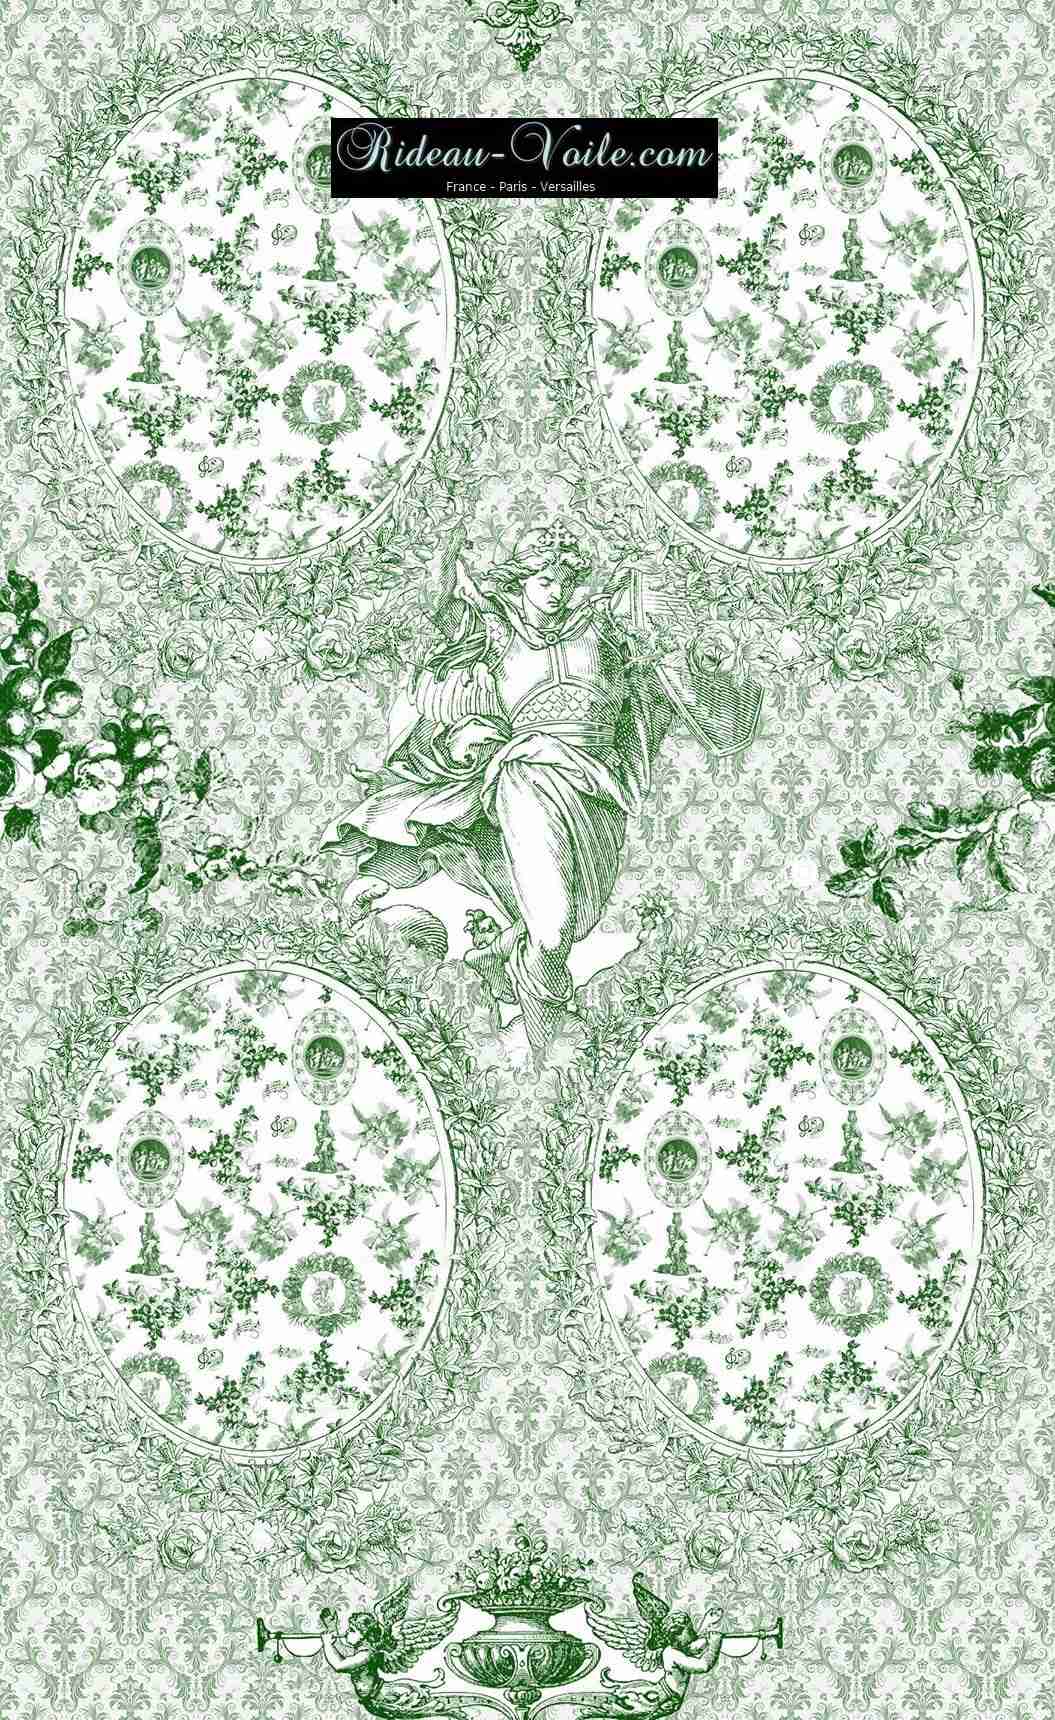 Toile de Jouy tissu ameublement motif imprimé décoration tapisserie au mètre confection sur mesure floral fleuri vert